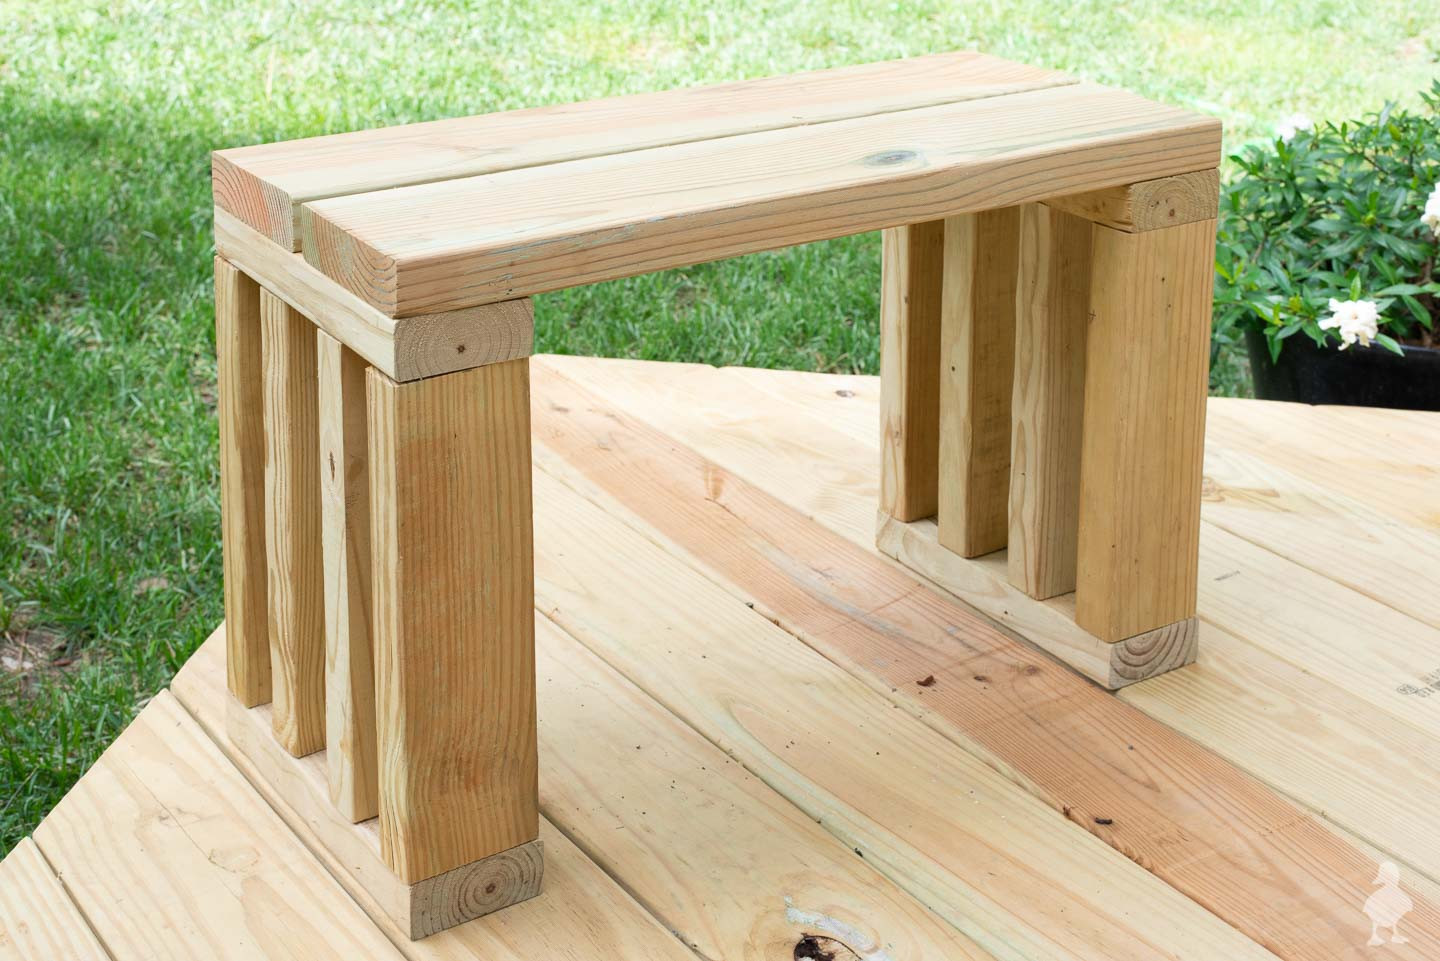 DIY Garden Bench Plans
 Scrap Wood Outdoor Bench Seat